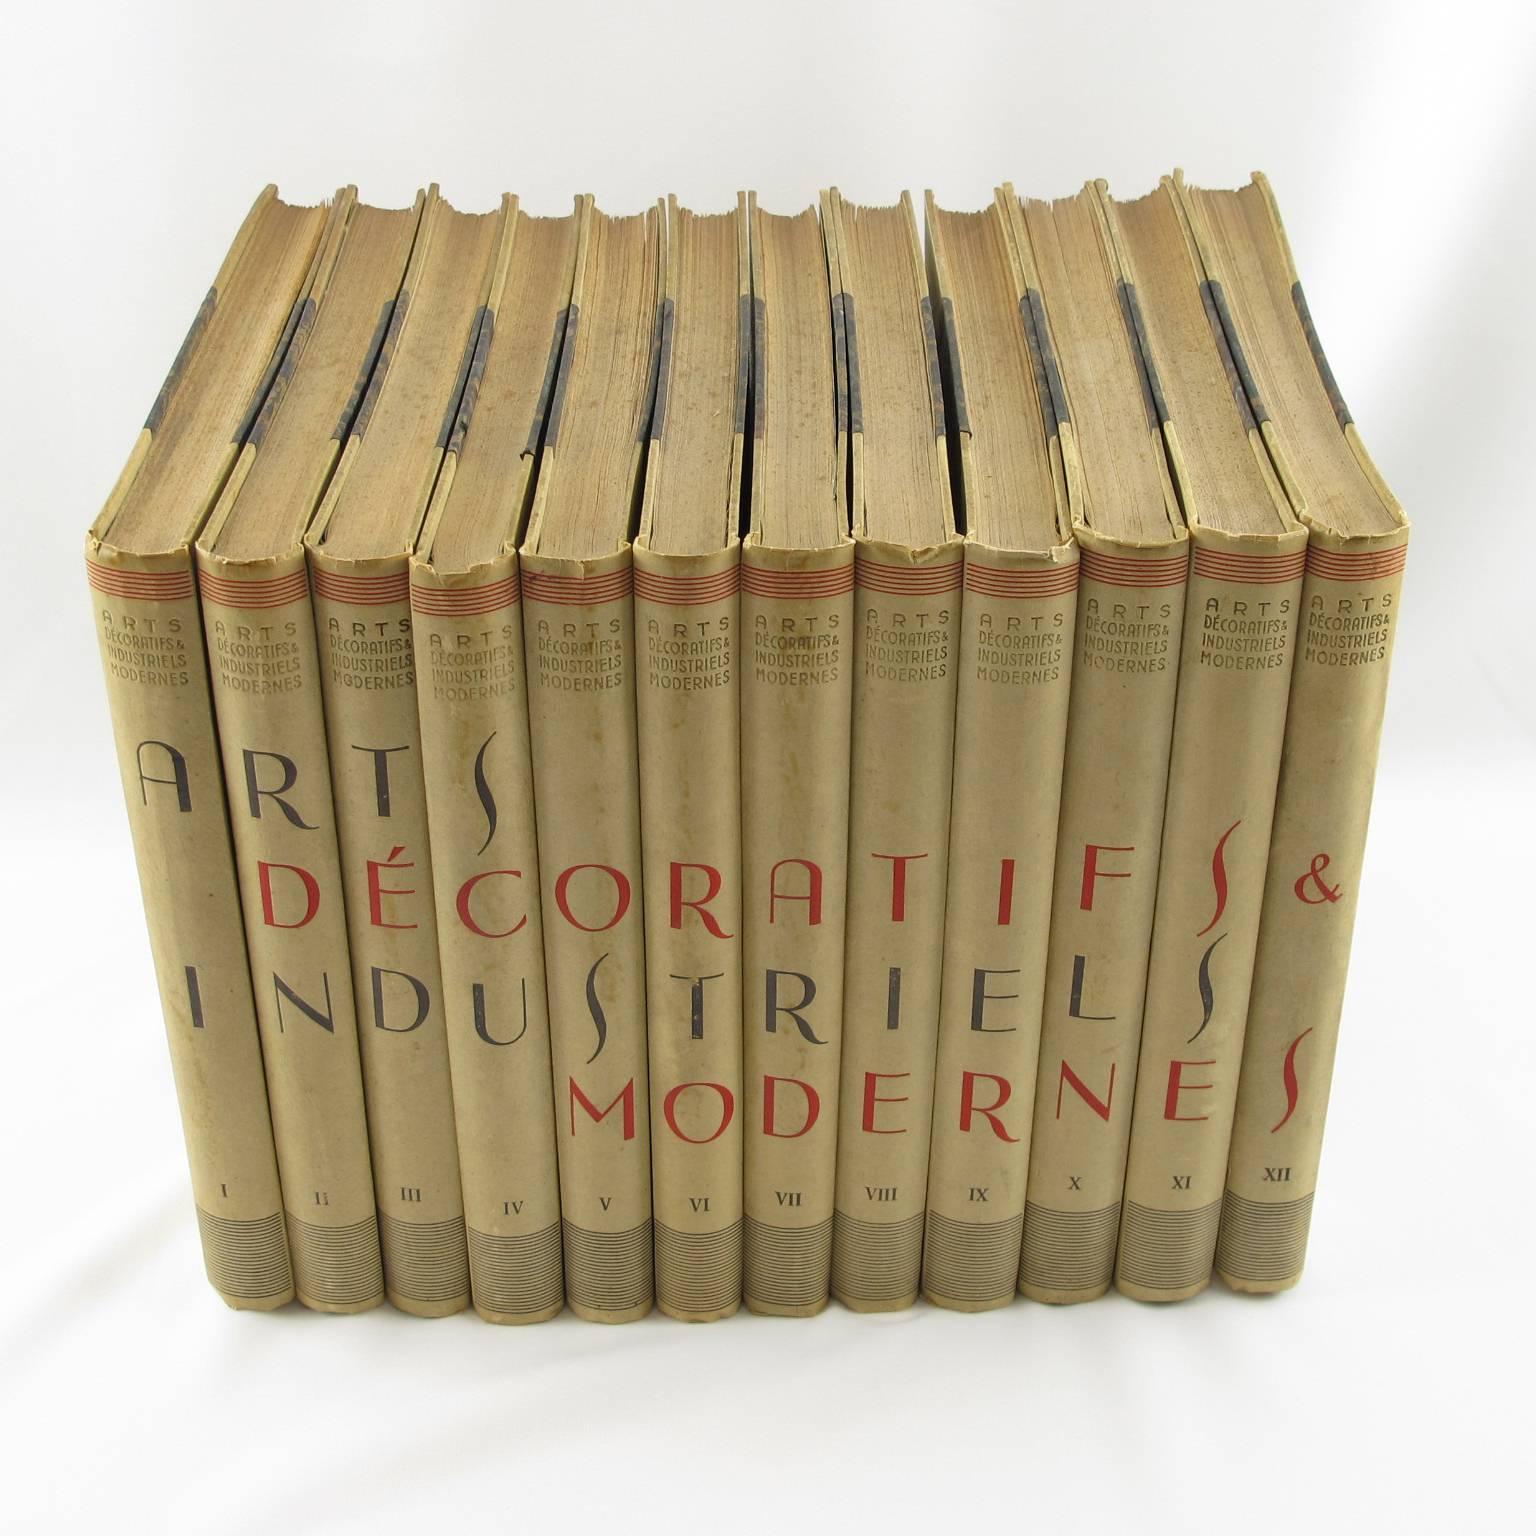 Art Deco Arts Decoratifs et Industriels Modernes Encyclopedie, 12 Books, 1925